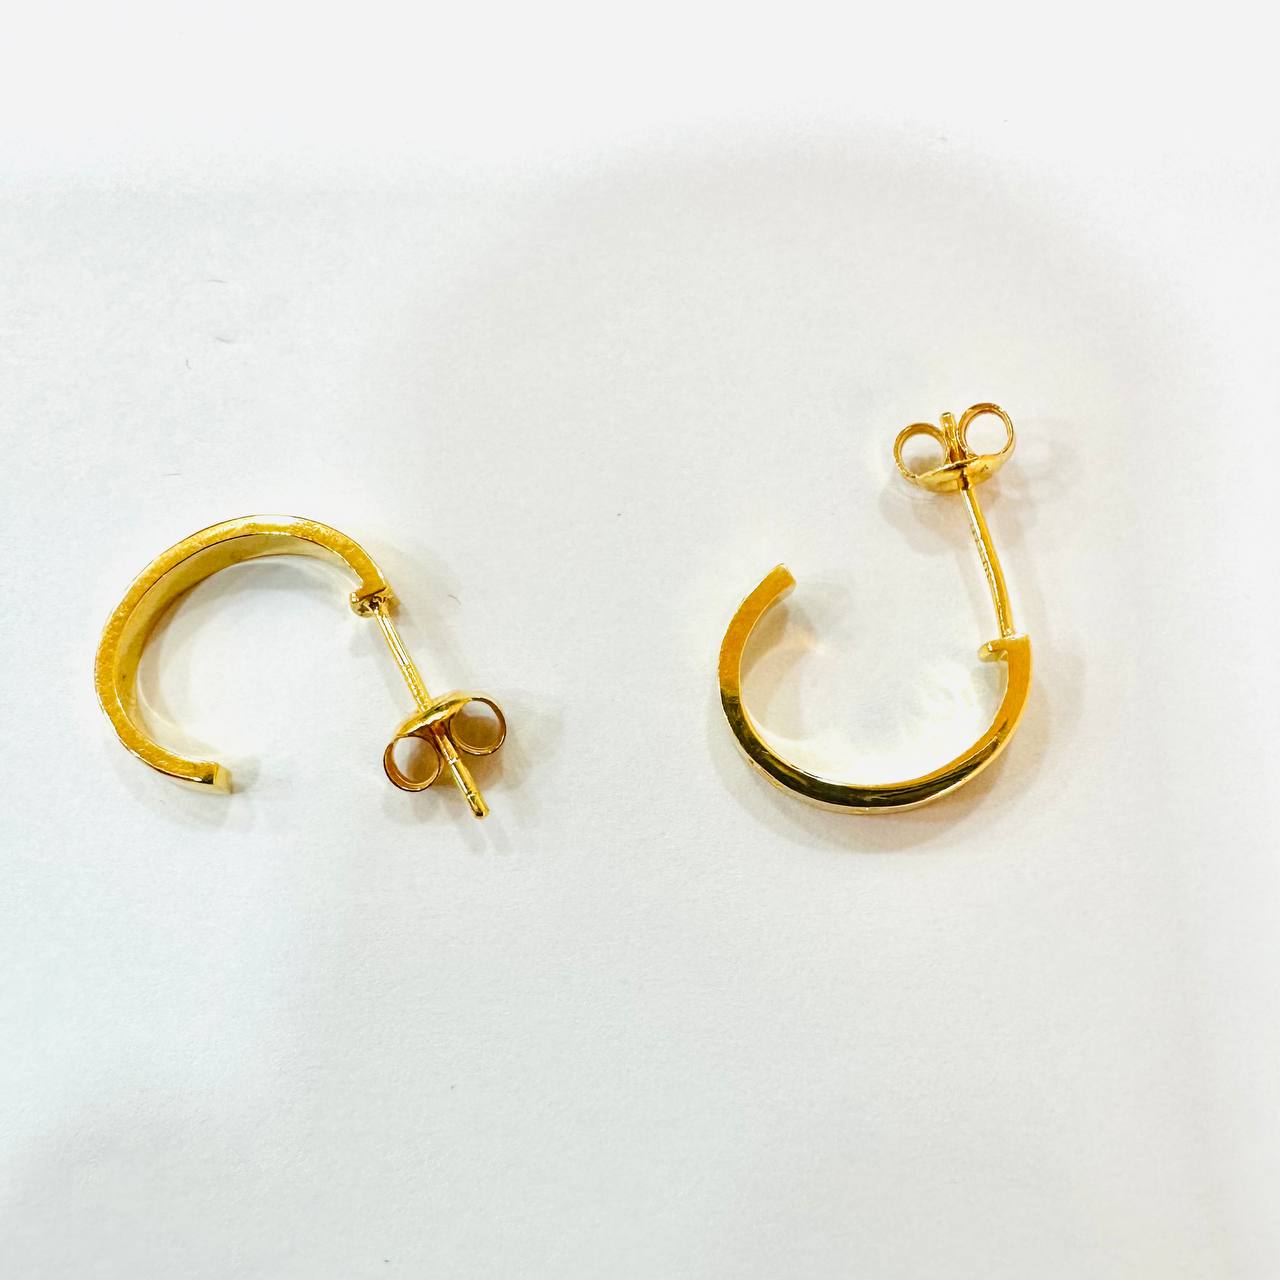 22k / 916 Gold C Design Earring V3-916 gold-Best Gold Shop